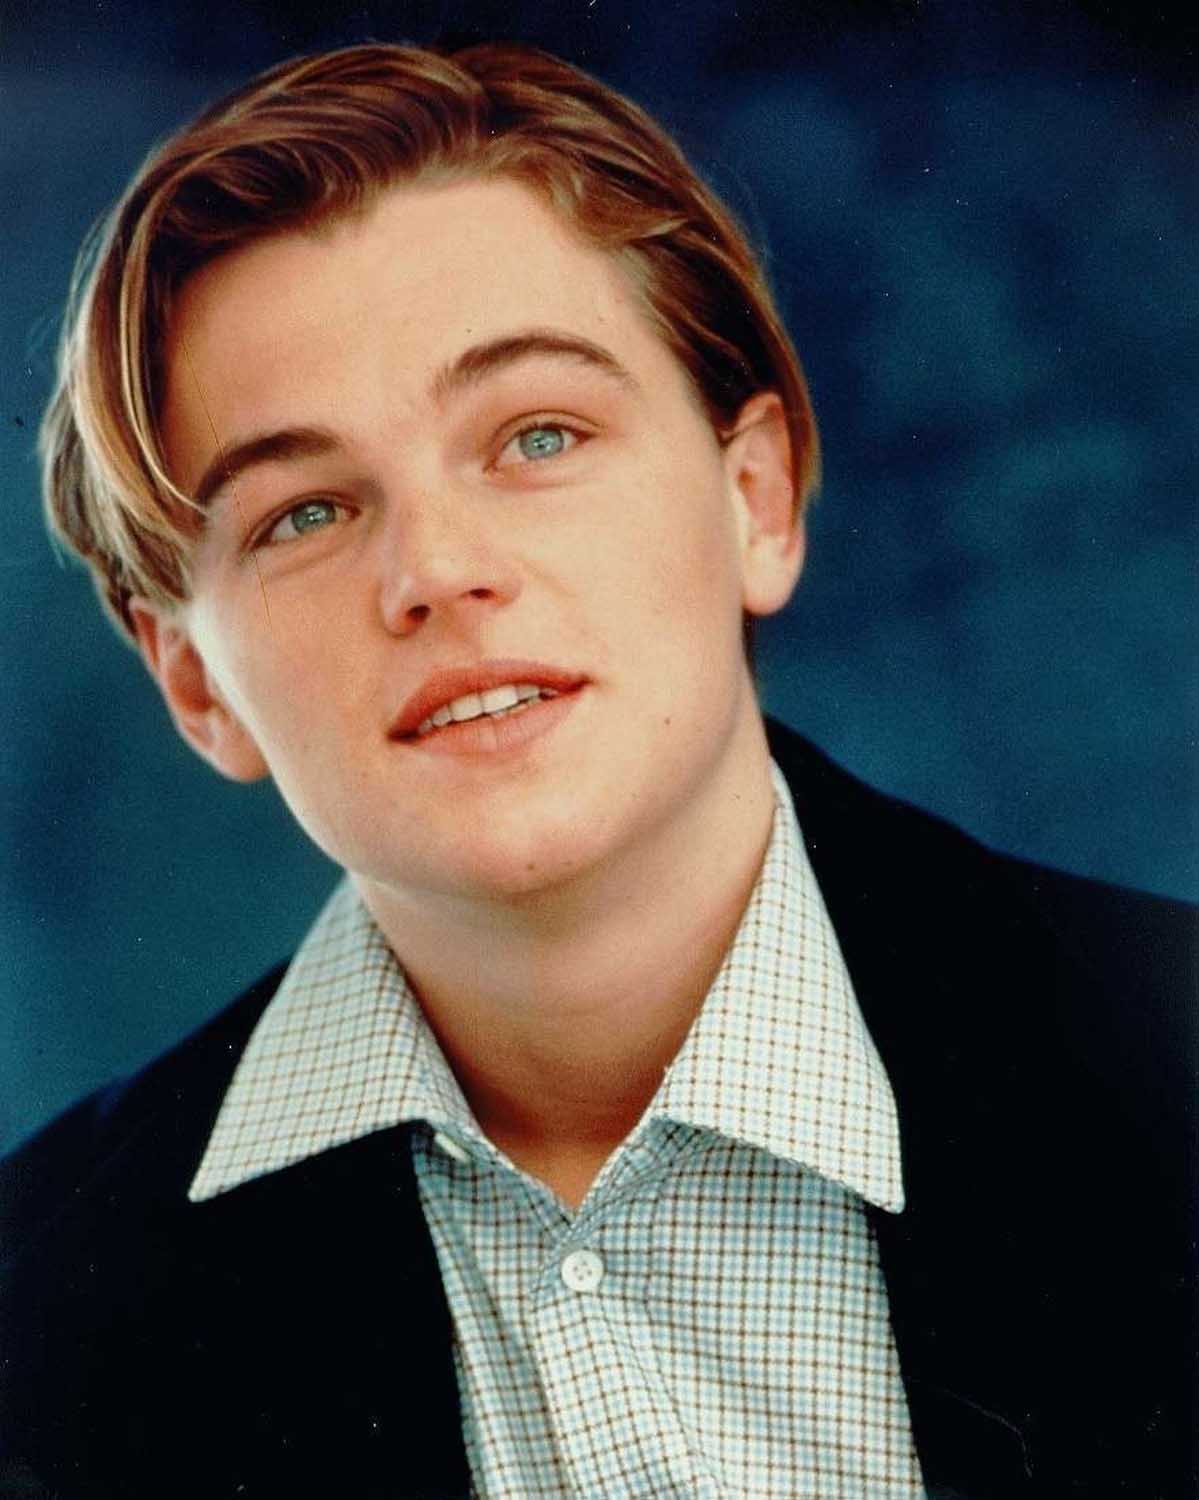 Leonardo DiCaprio - một trong những nam diễn viên được yêu thích nhất trên thế giới - sẽ khiến bạn phải đồng ý xem những hình ảnh liên quan đến anh. Với diễn xuất tài năng và ngoại hình đầy nam tính, anh chắc chắn là một trong những ngôi sao điện ảnh nổi tiếng nhất của Hollywood.